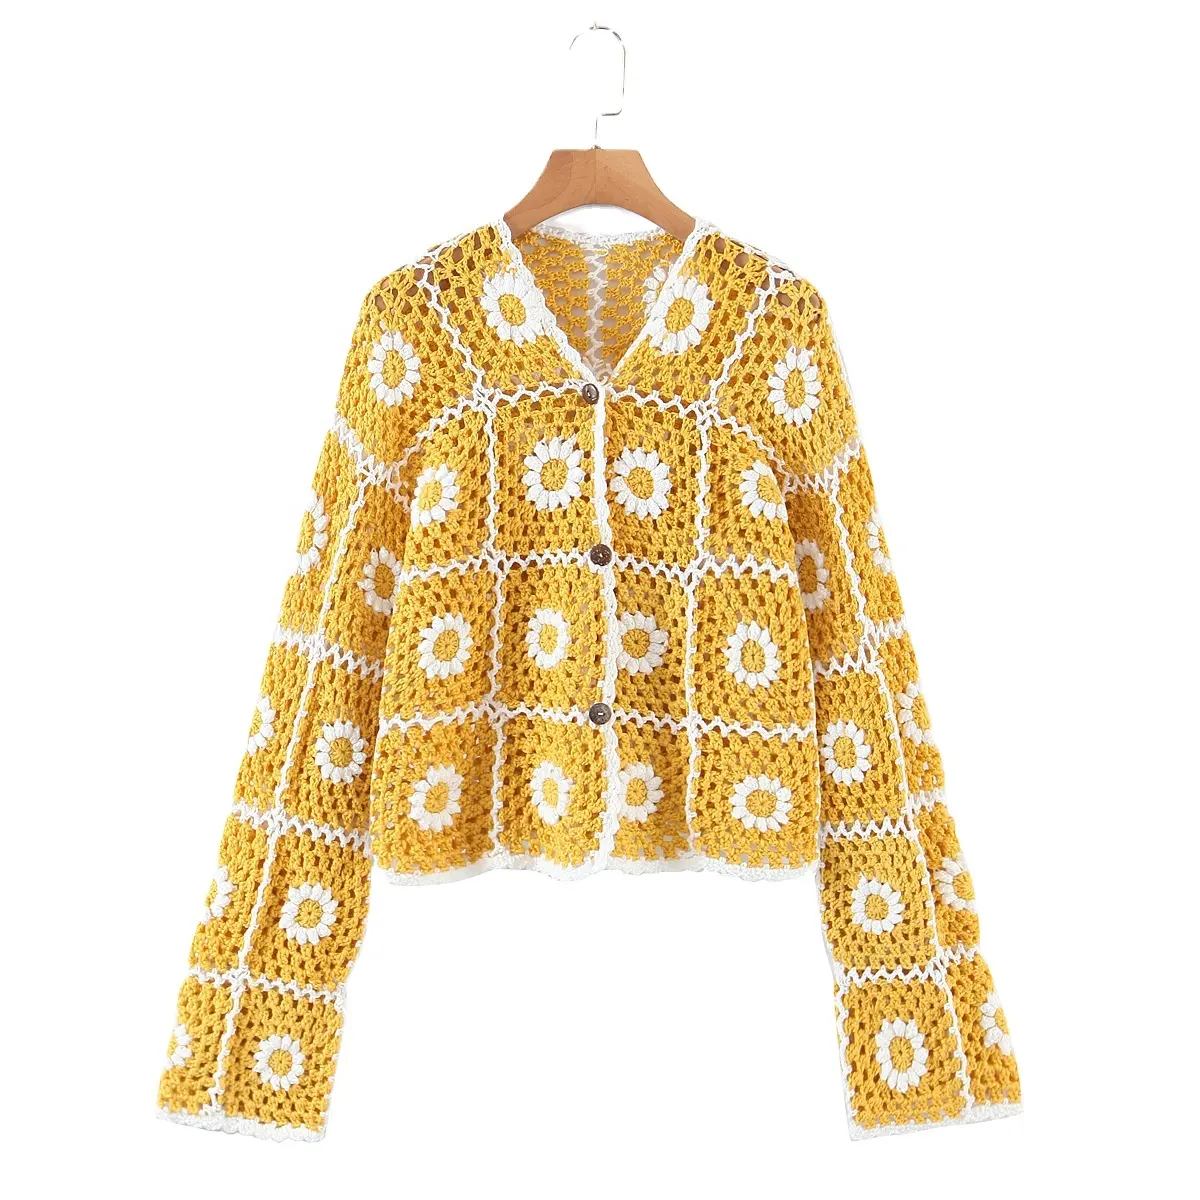 Chaqueta de suéter de ganchillo con cuadrados de margaritas para mujer, cárdigan bohemio con flores soleadas, amarillo con margaritas blancas, botón frontal, talla única